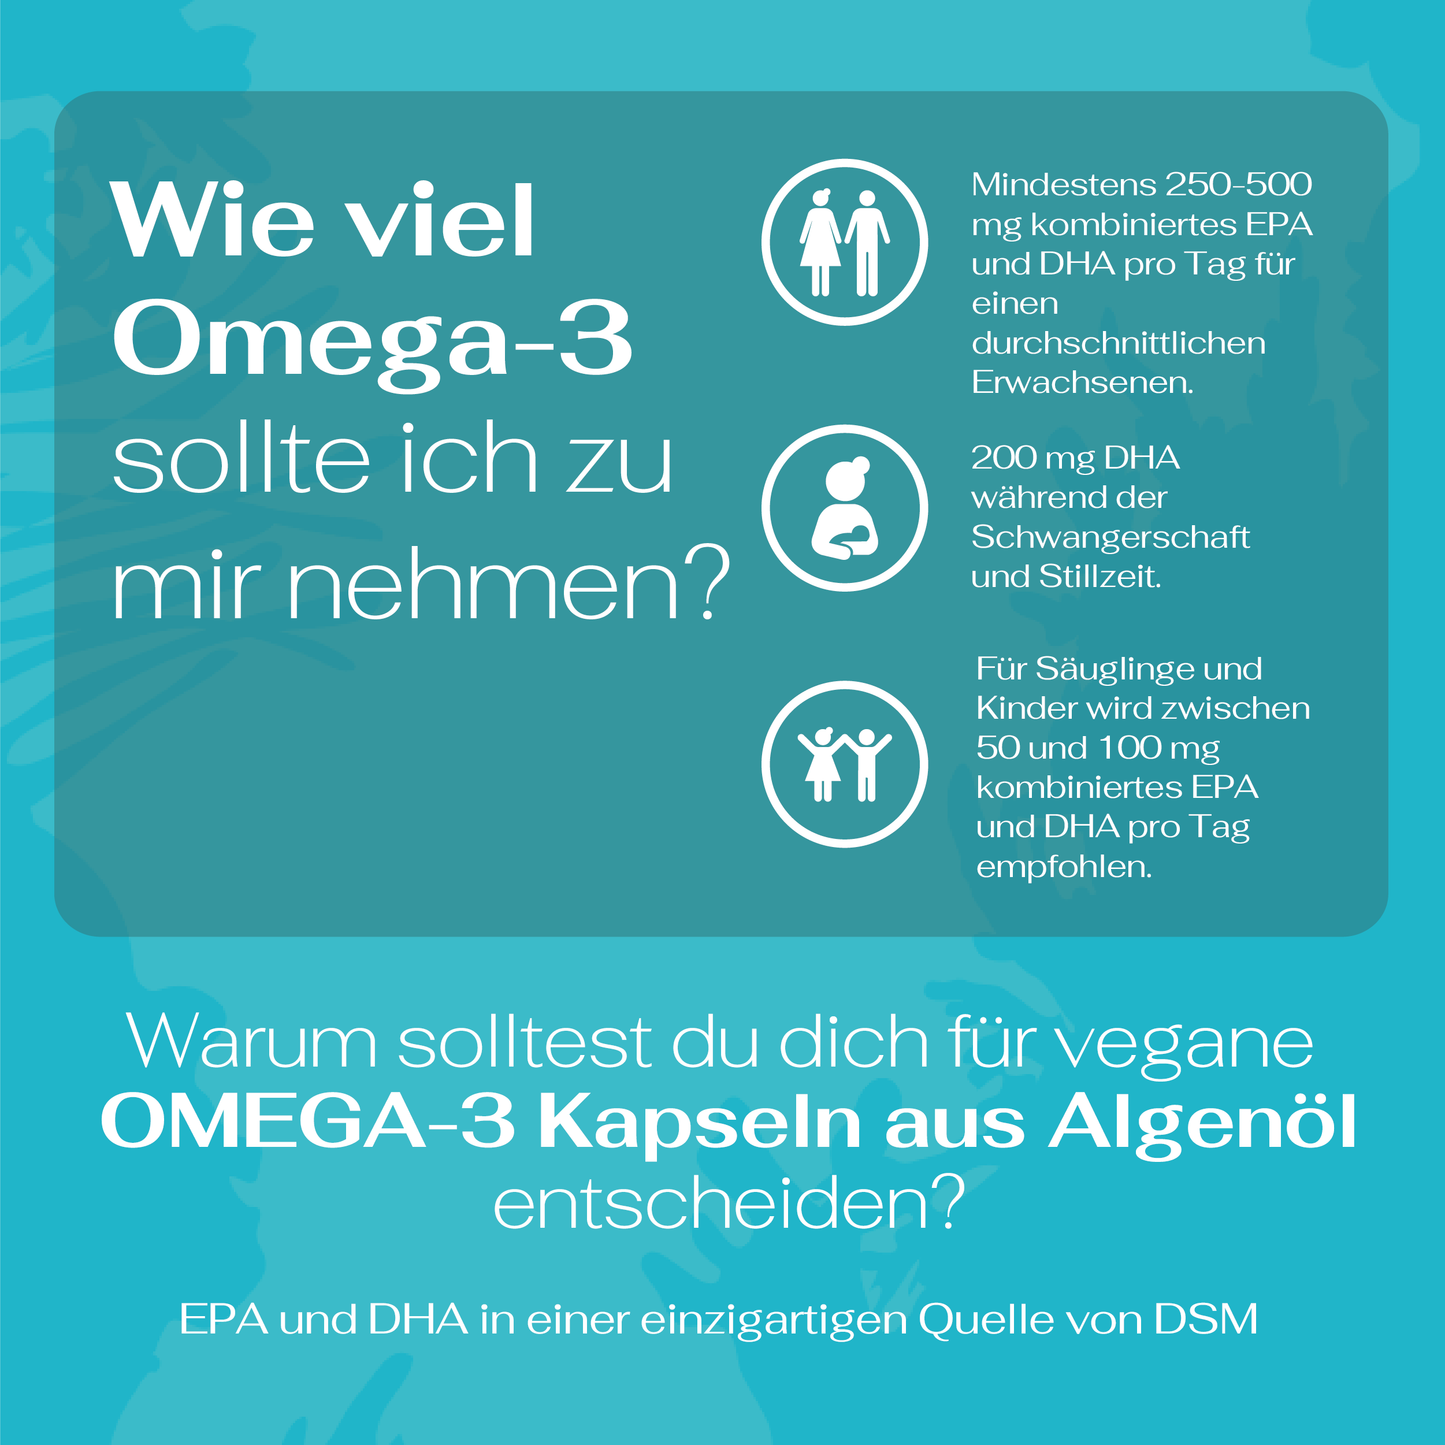 Vegane Omega-3 Kapseln